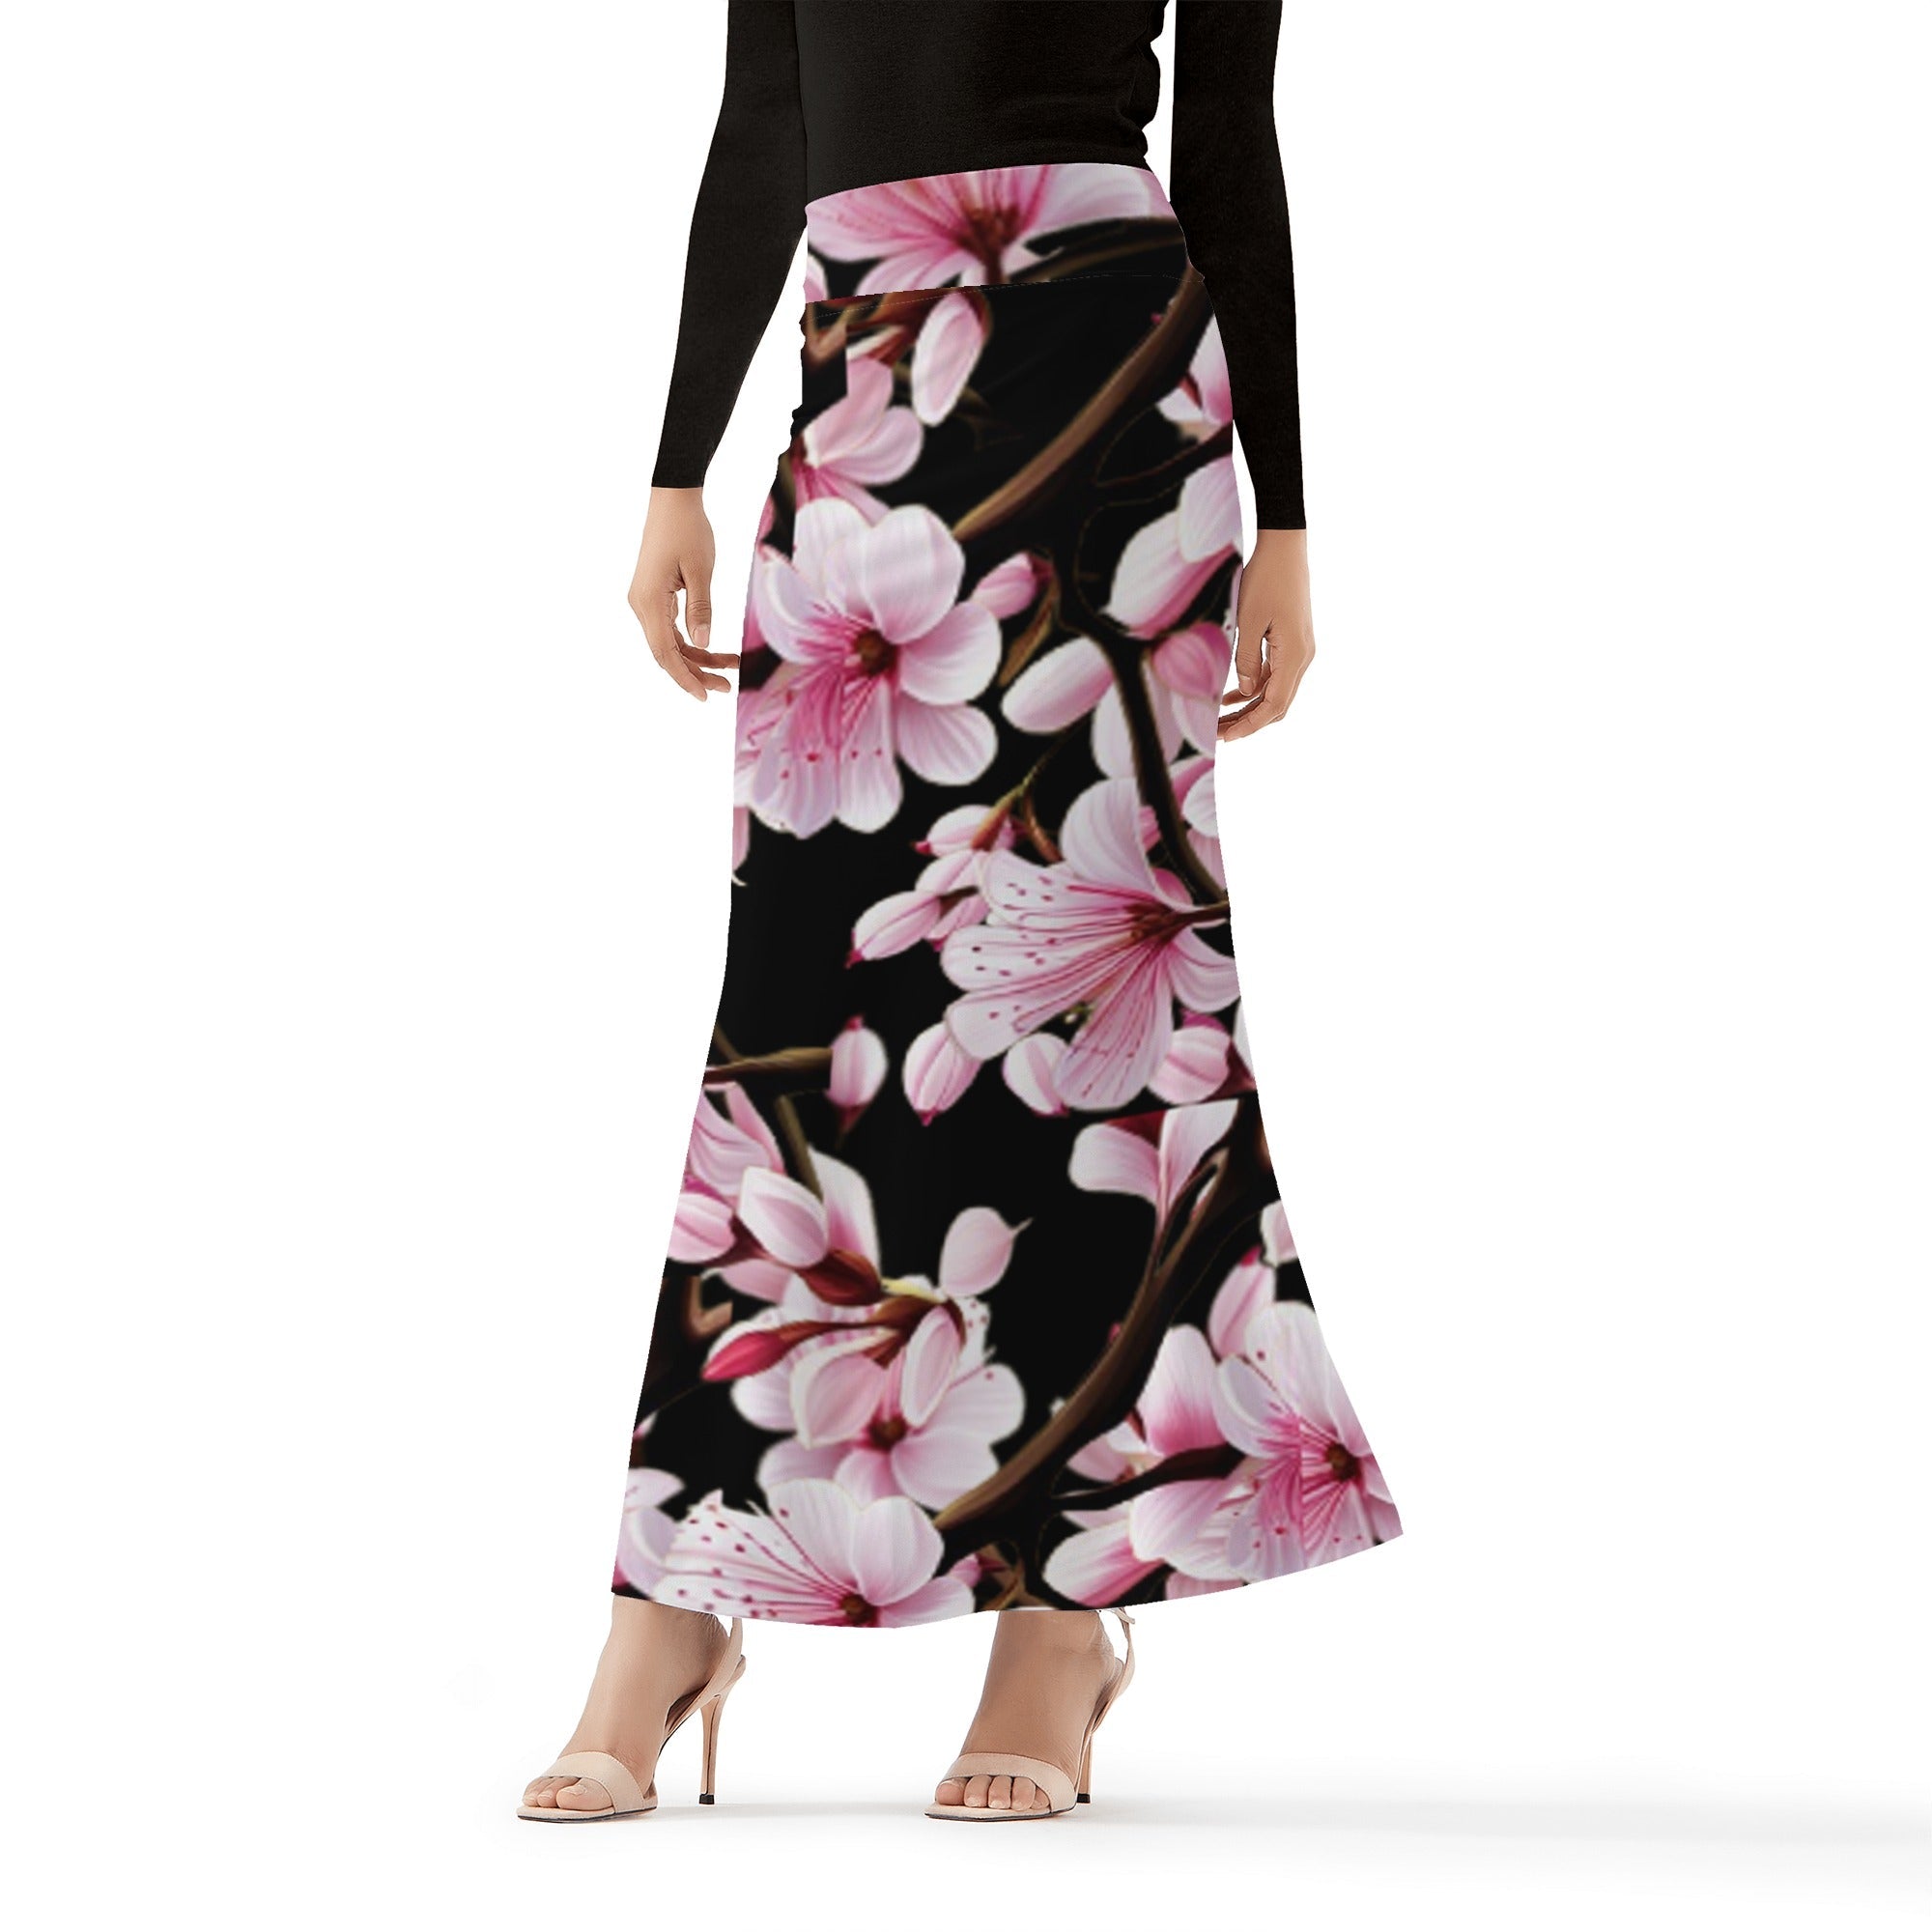 1 - Black Cherry Blossom Womens Full Length Skirt - 3 colors - women's skirt at TFC&H Co.